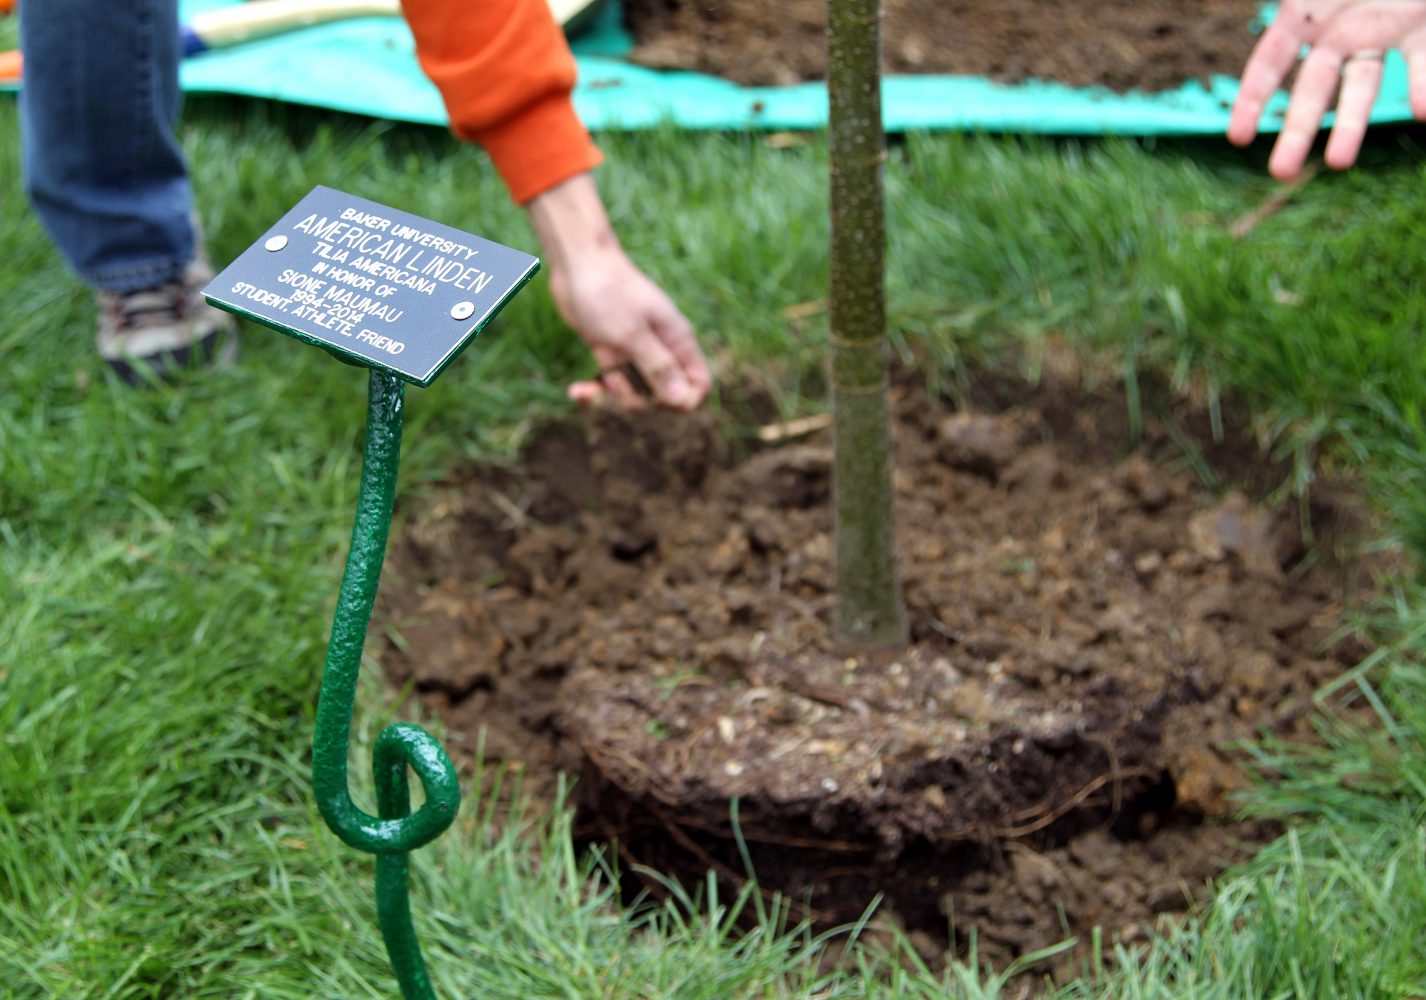 Memorial tree planting unites campus